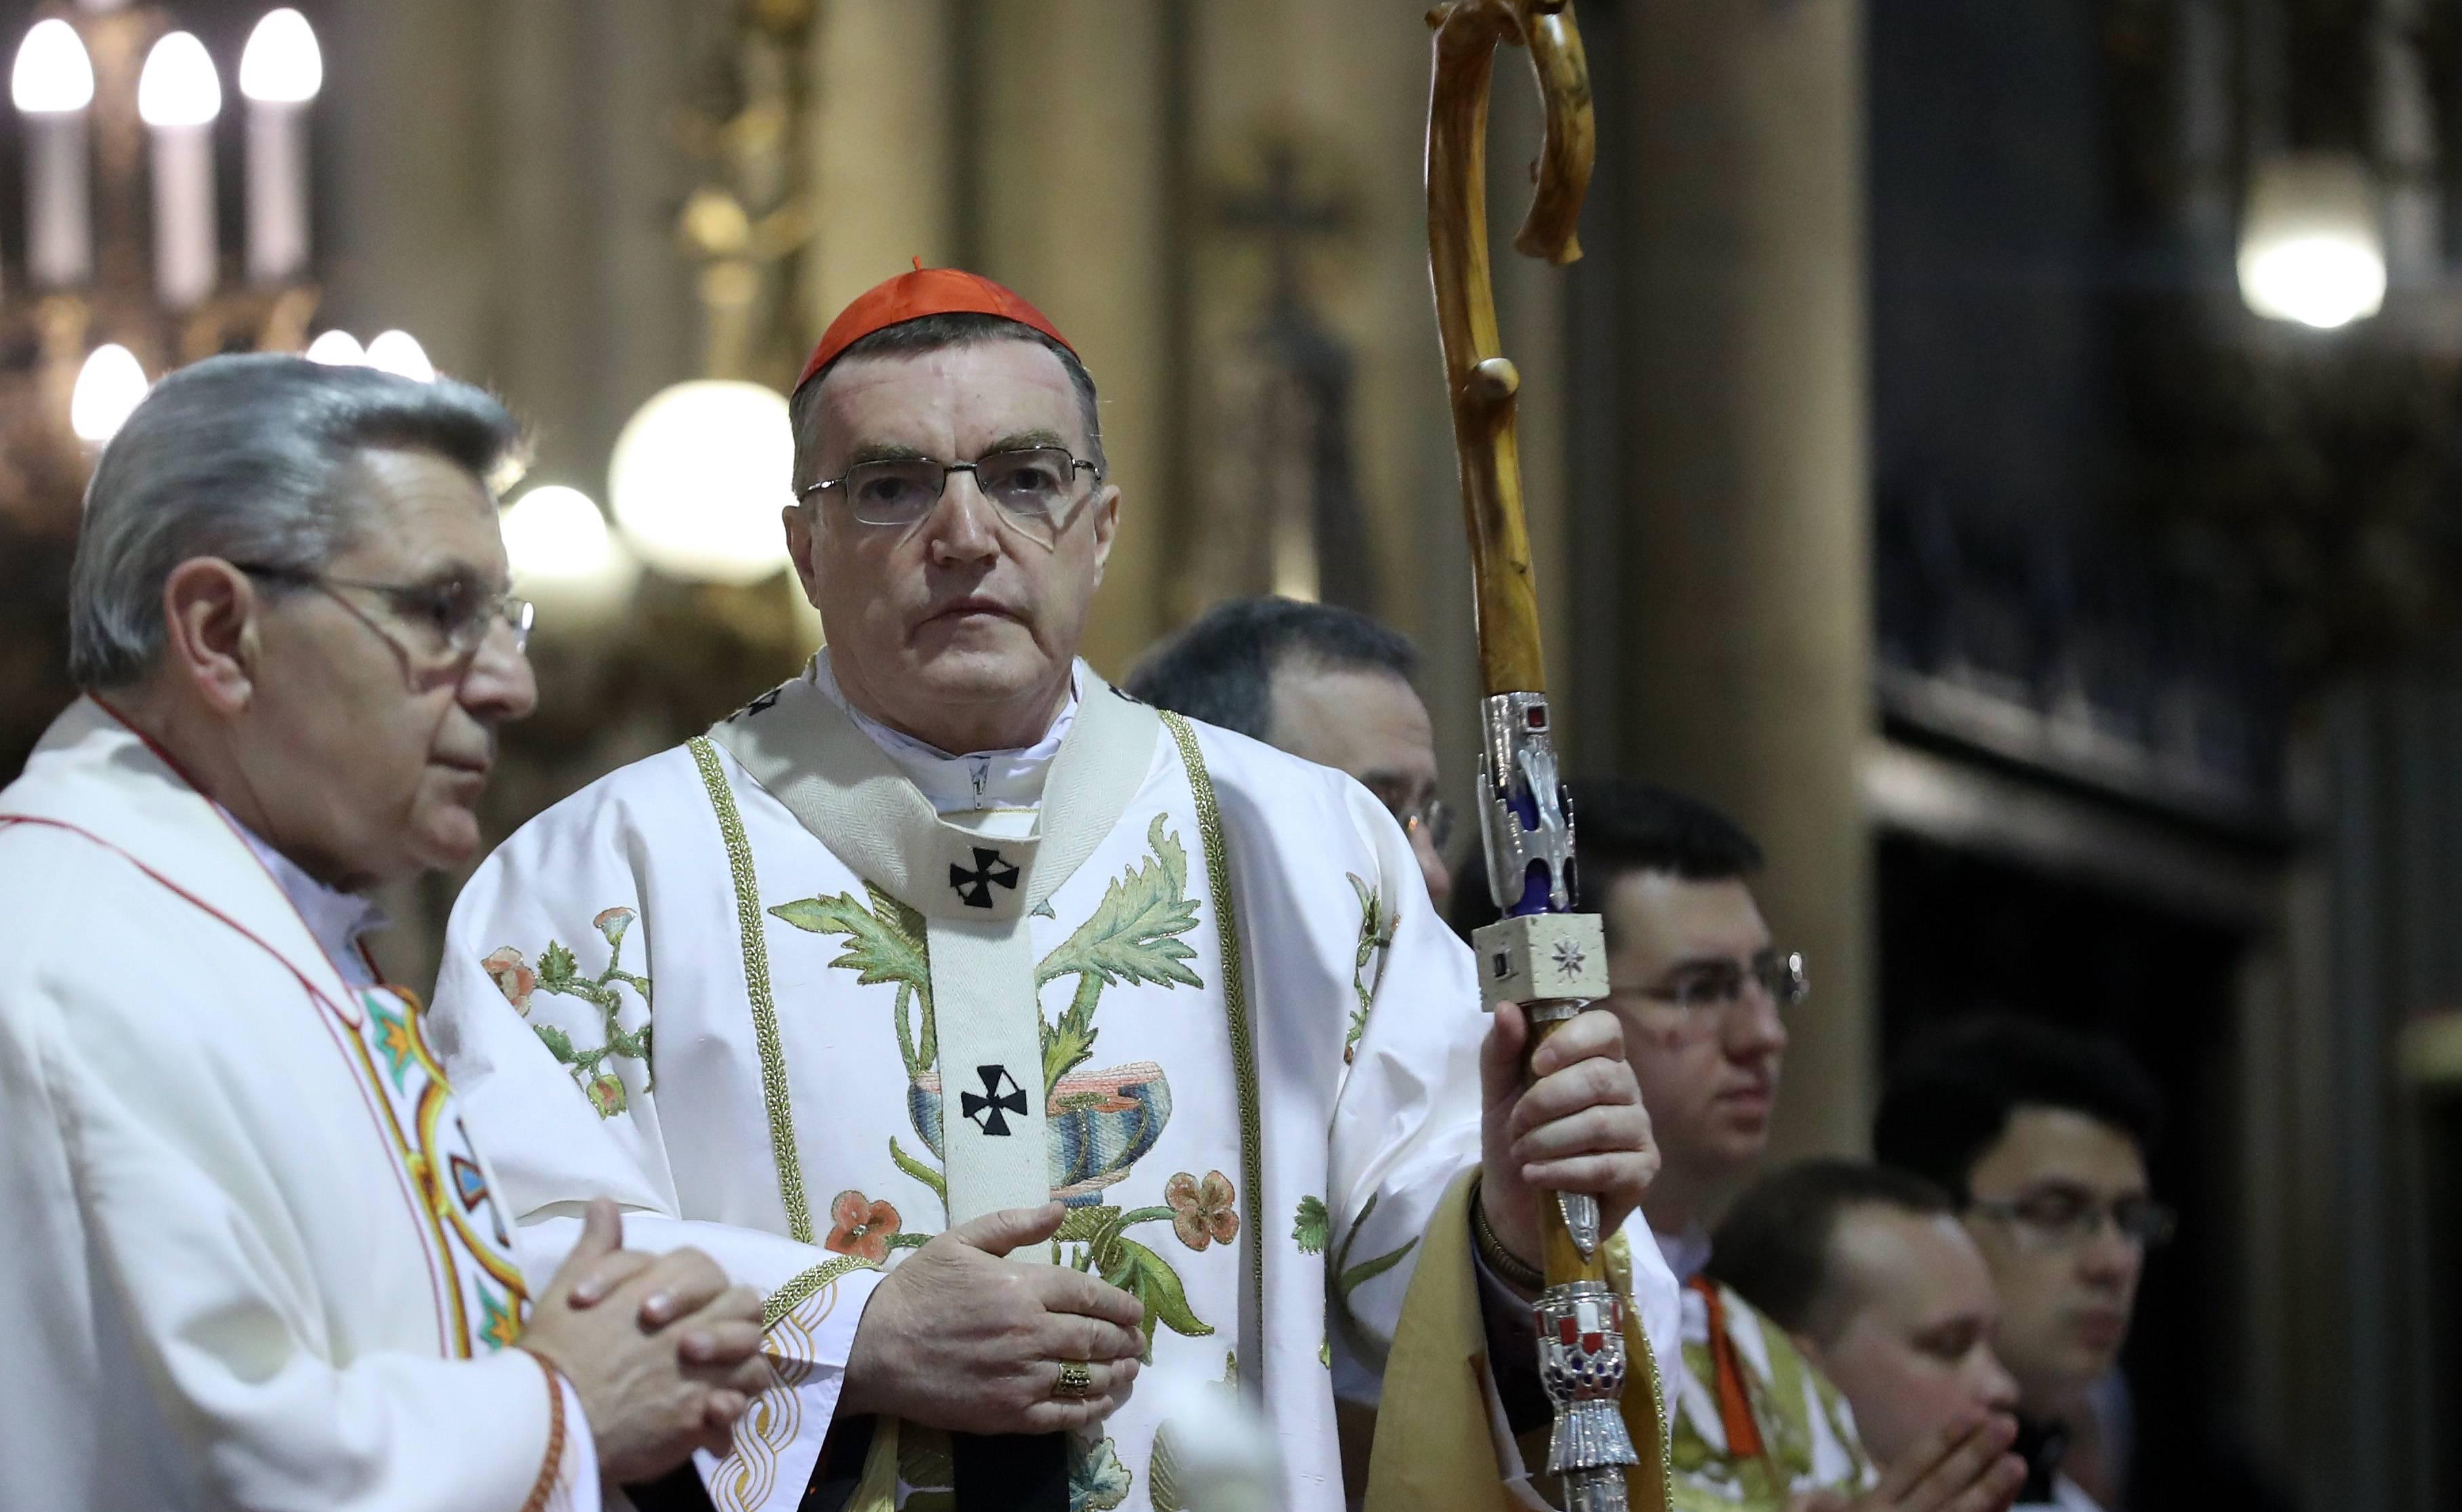 JOŠ JEDNA PROVOKACIJA U ZAGREBU: Fra Mario od kardinala Bozanića tražio da DA OTKAŽE SUSRET S VUČIĆEM!